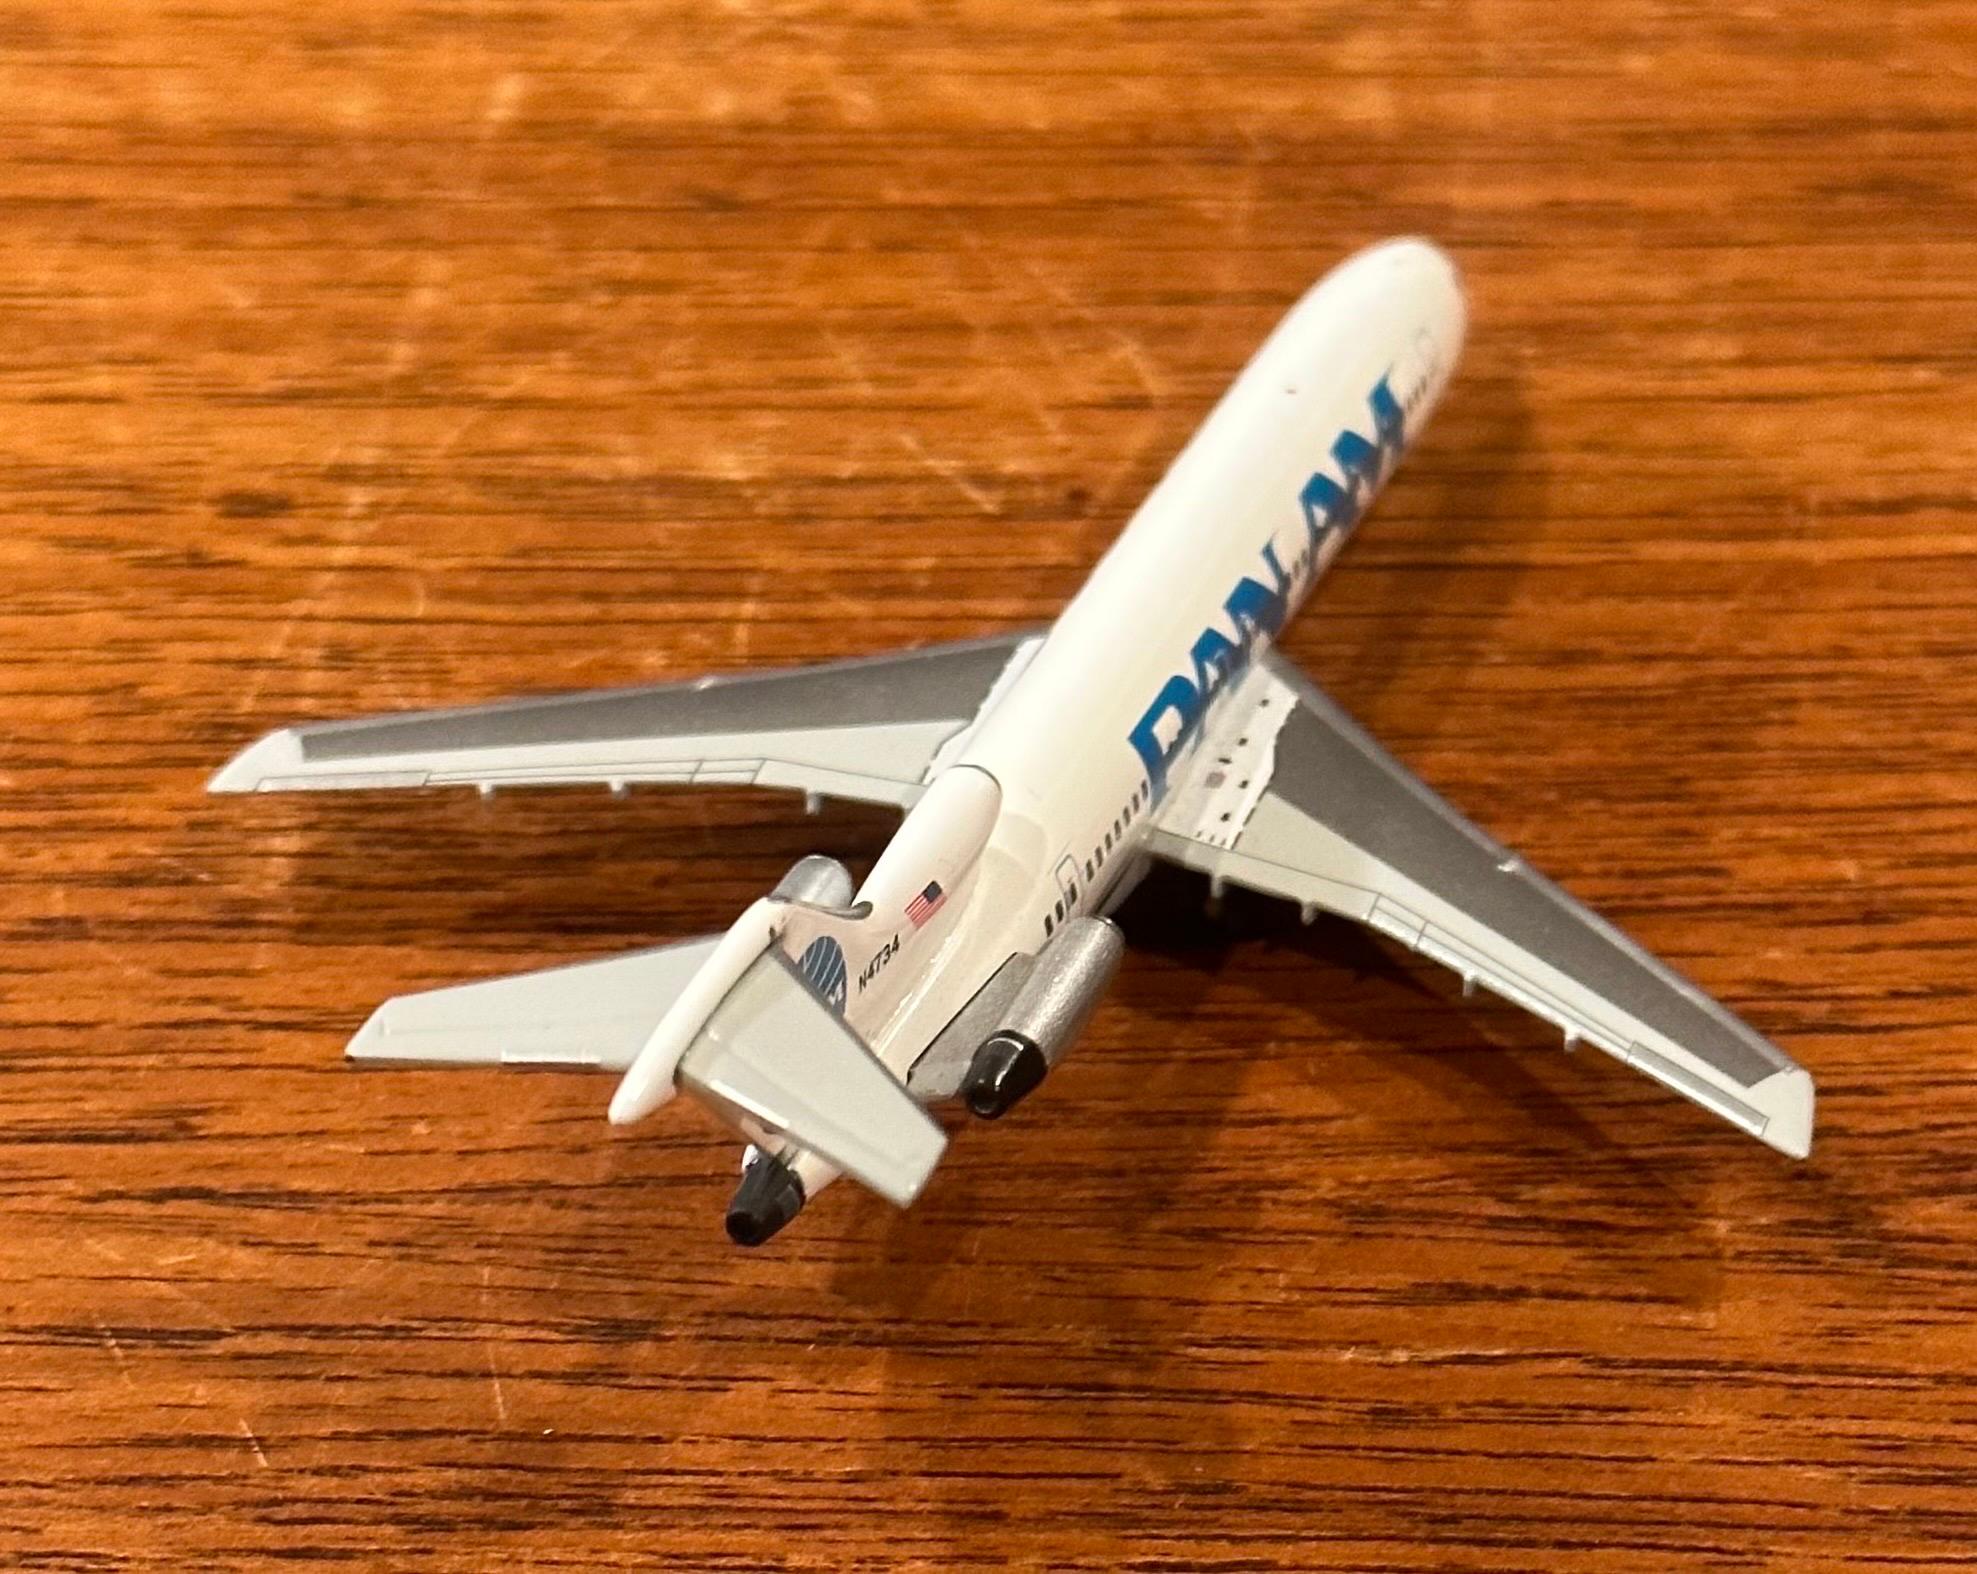 Pan American Airlines Jetliner / Airplane Die Cast Paperweight Model 1